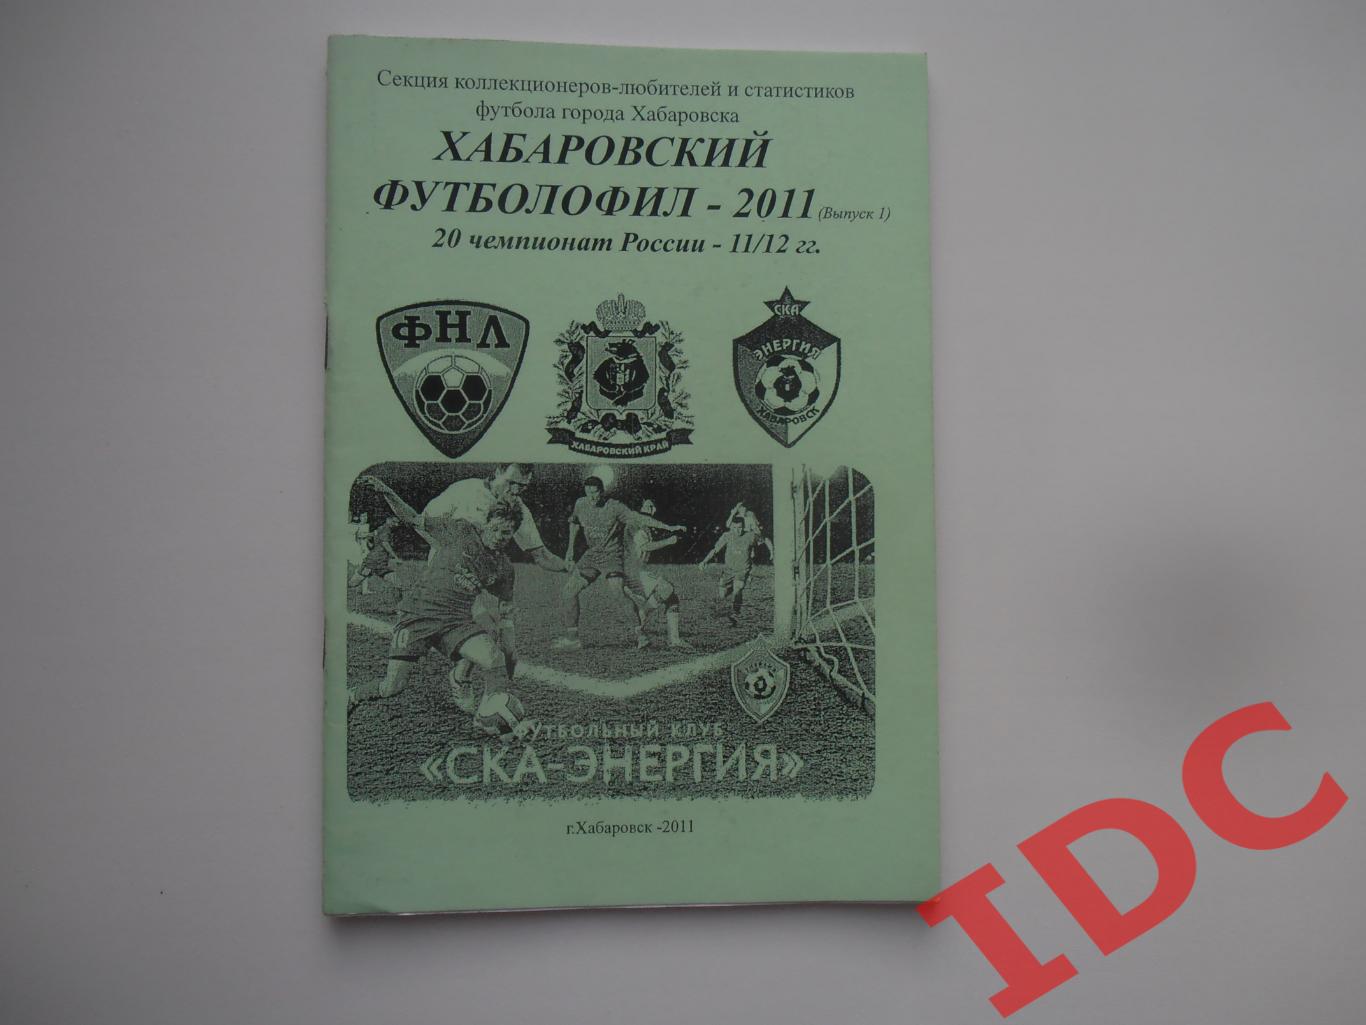 Хабаровский футболофил 2011 (выпуск 1)